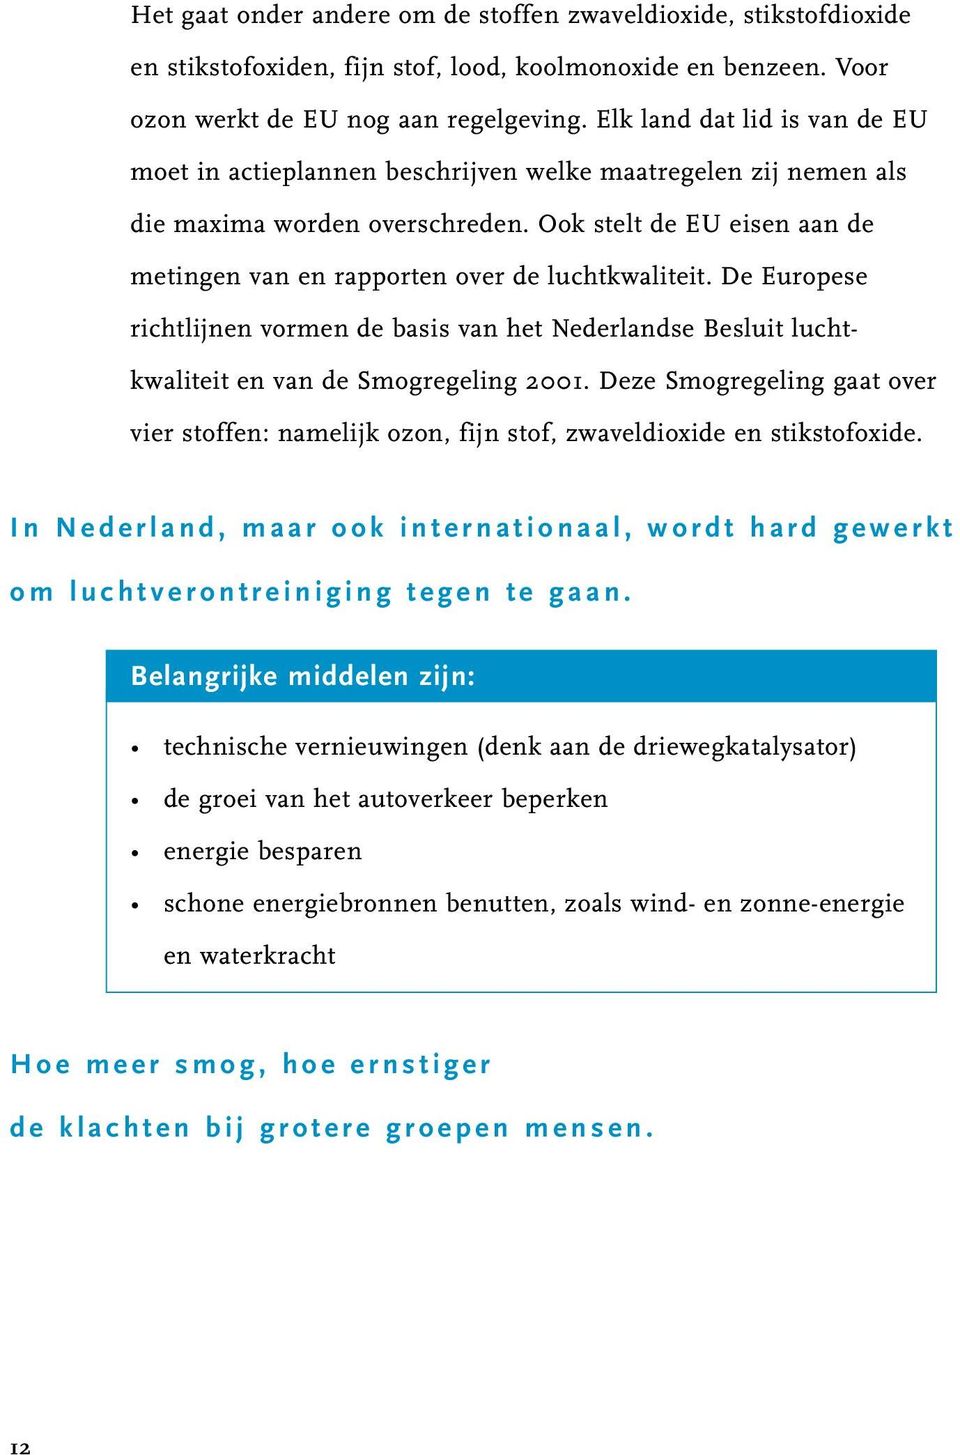 Ook stelt de EU eisen aan de metingen van en rapporten over de luchtkwaliteit. De Europese richtlijnen vormen de basis van het Nederlandse Besluit luchtkwaliteit en van de Smogregeling 2001.